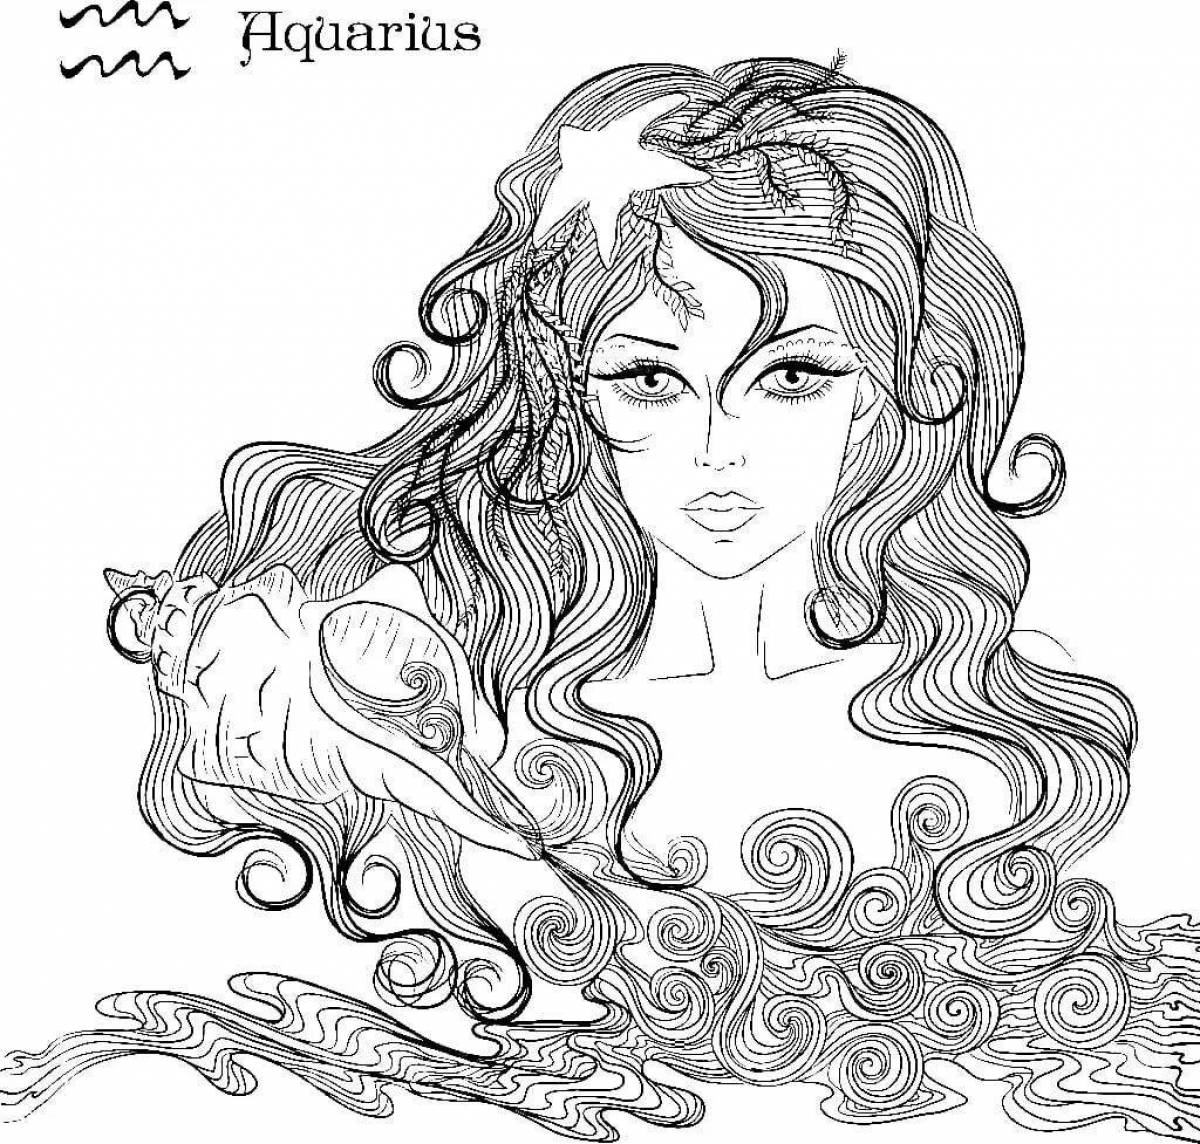 Aquarius zodiac sign #4